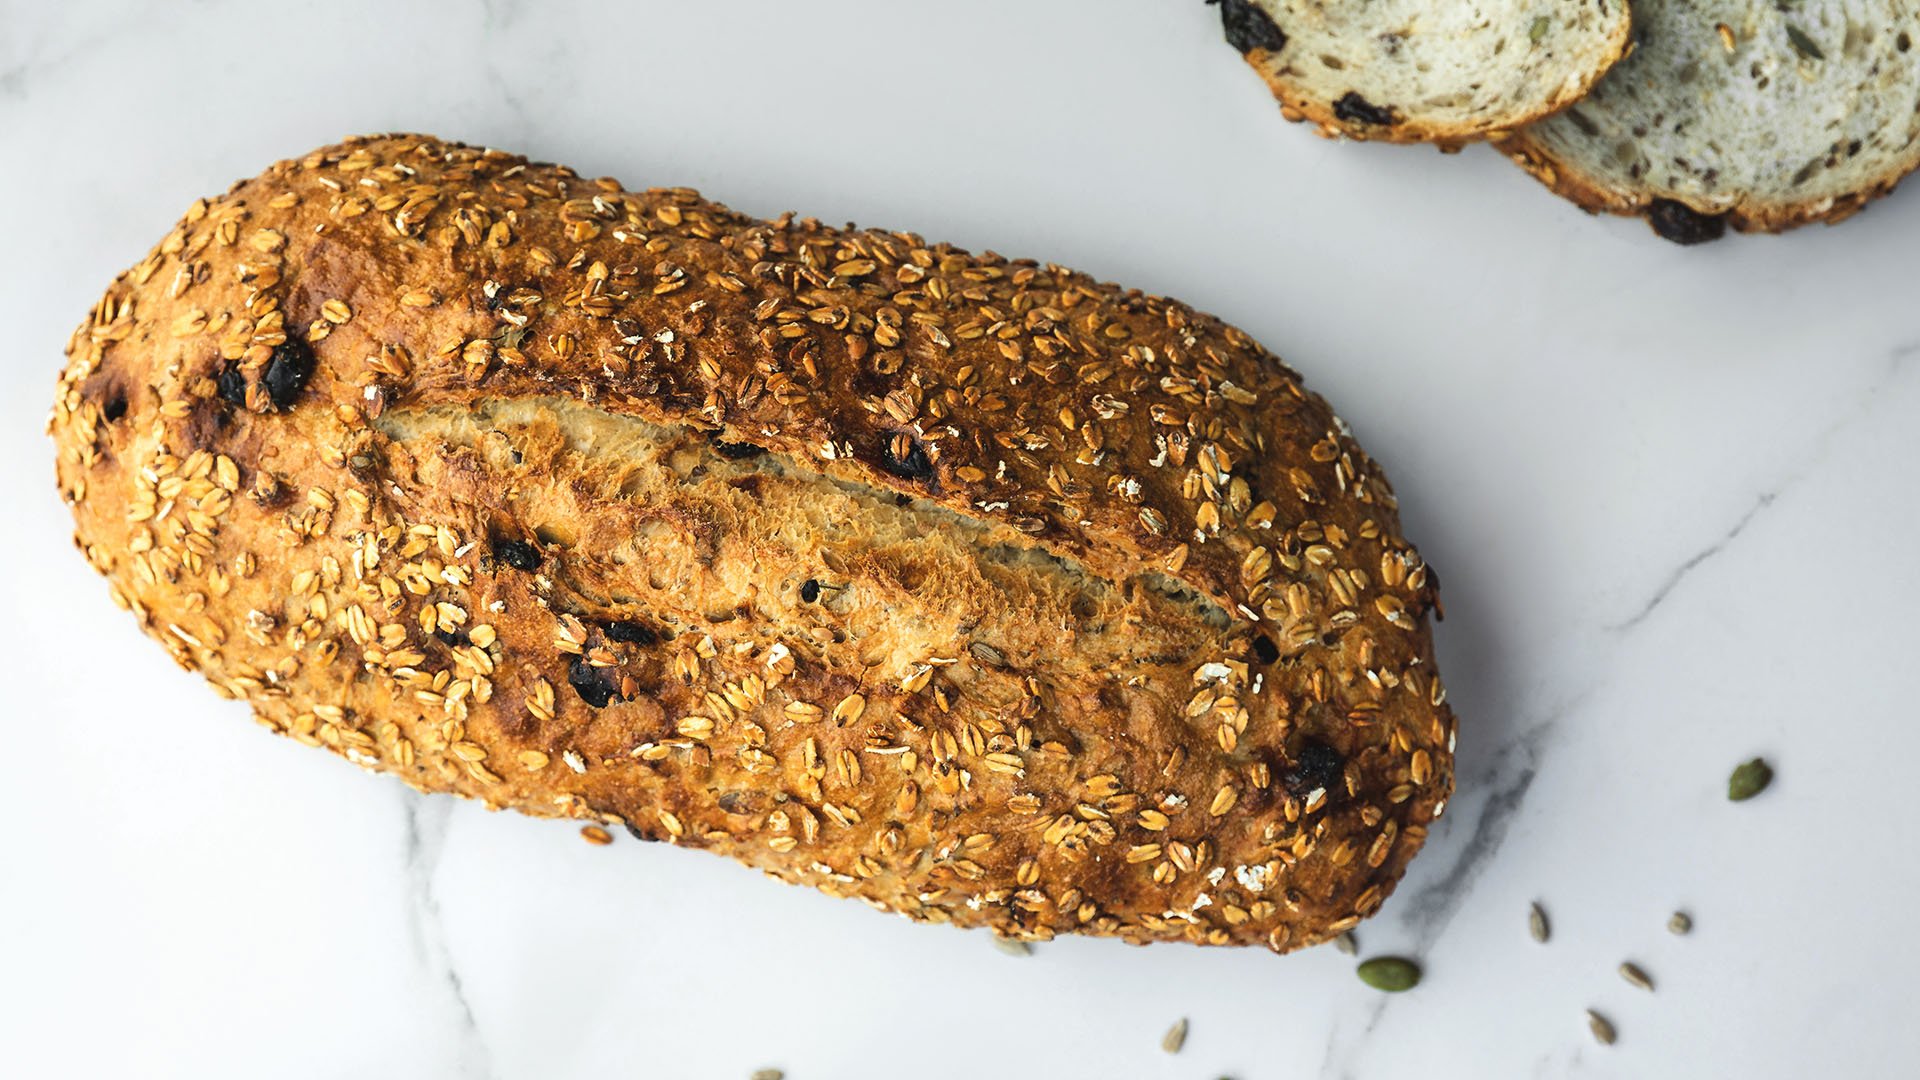 Le Pain Quotidien Organic Sourdough 5 Grain Bread